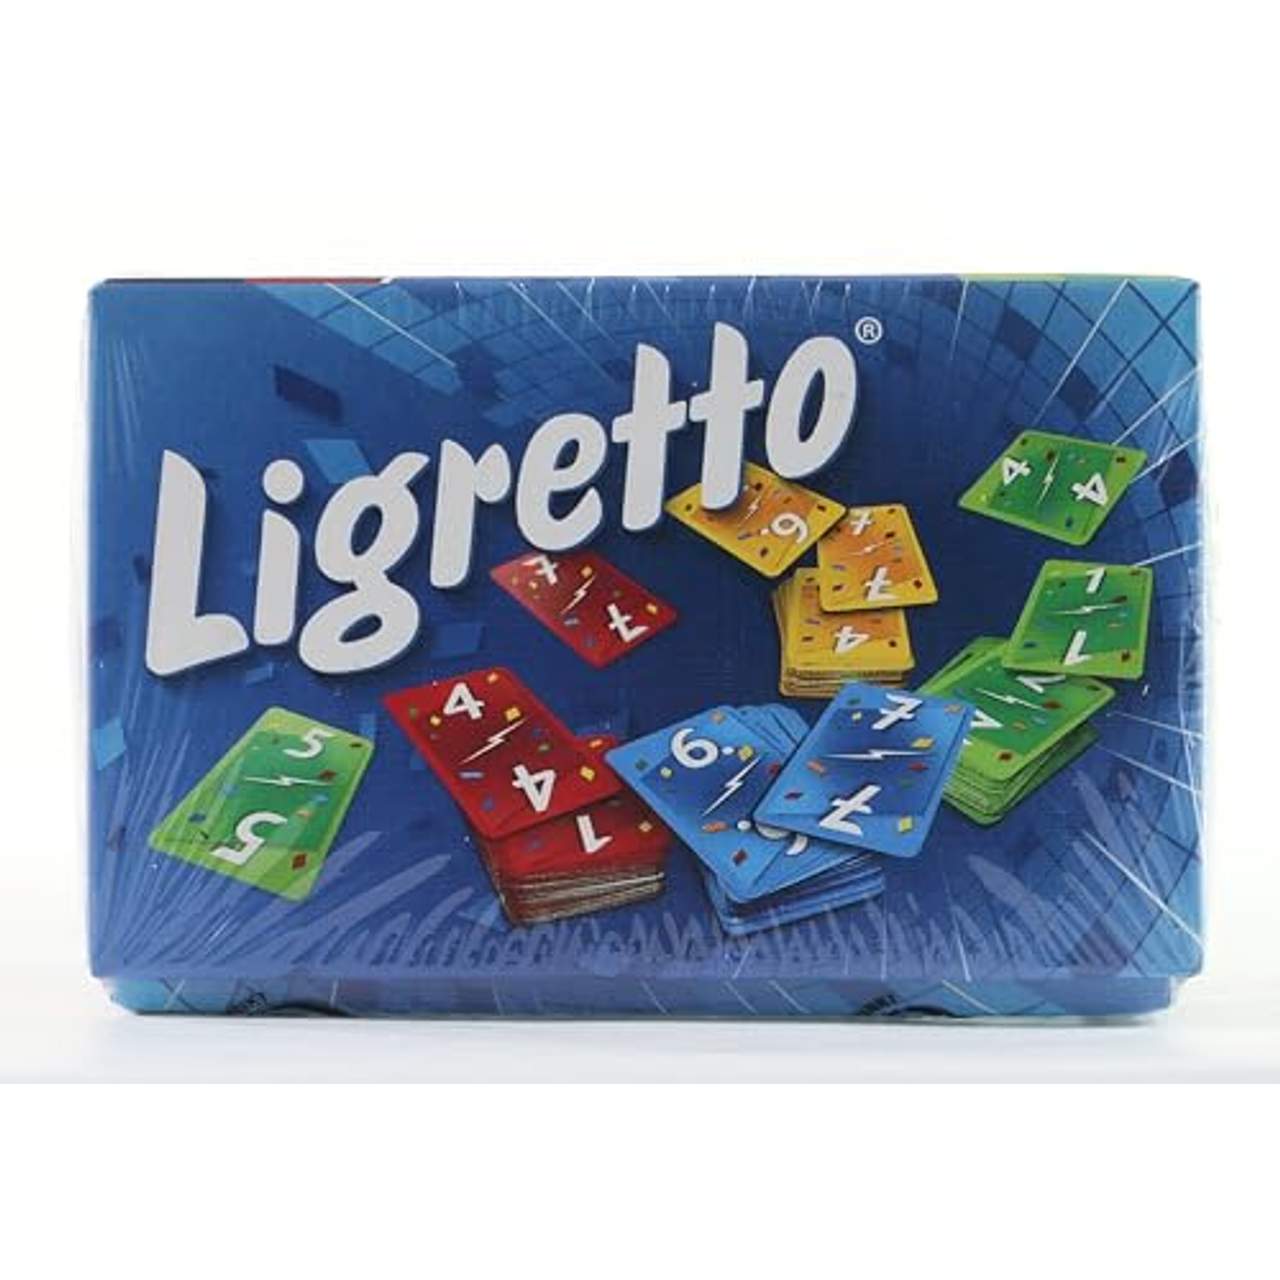 Schmidt Spiele 01101 Ligretto blau